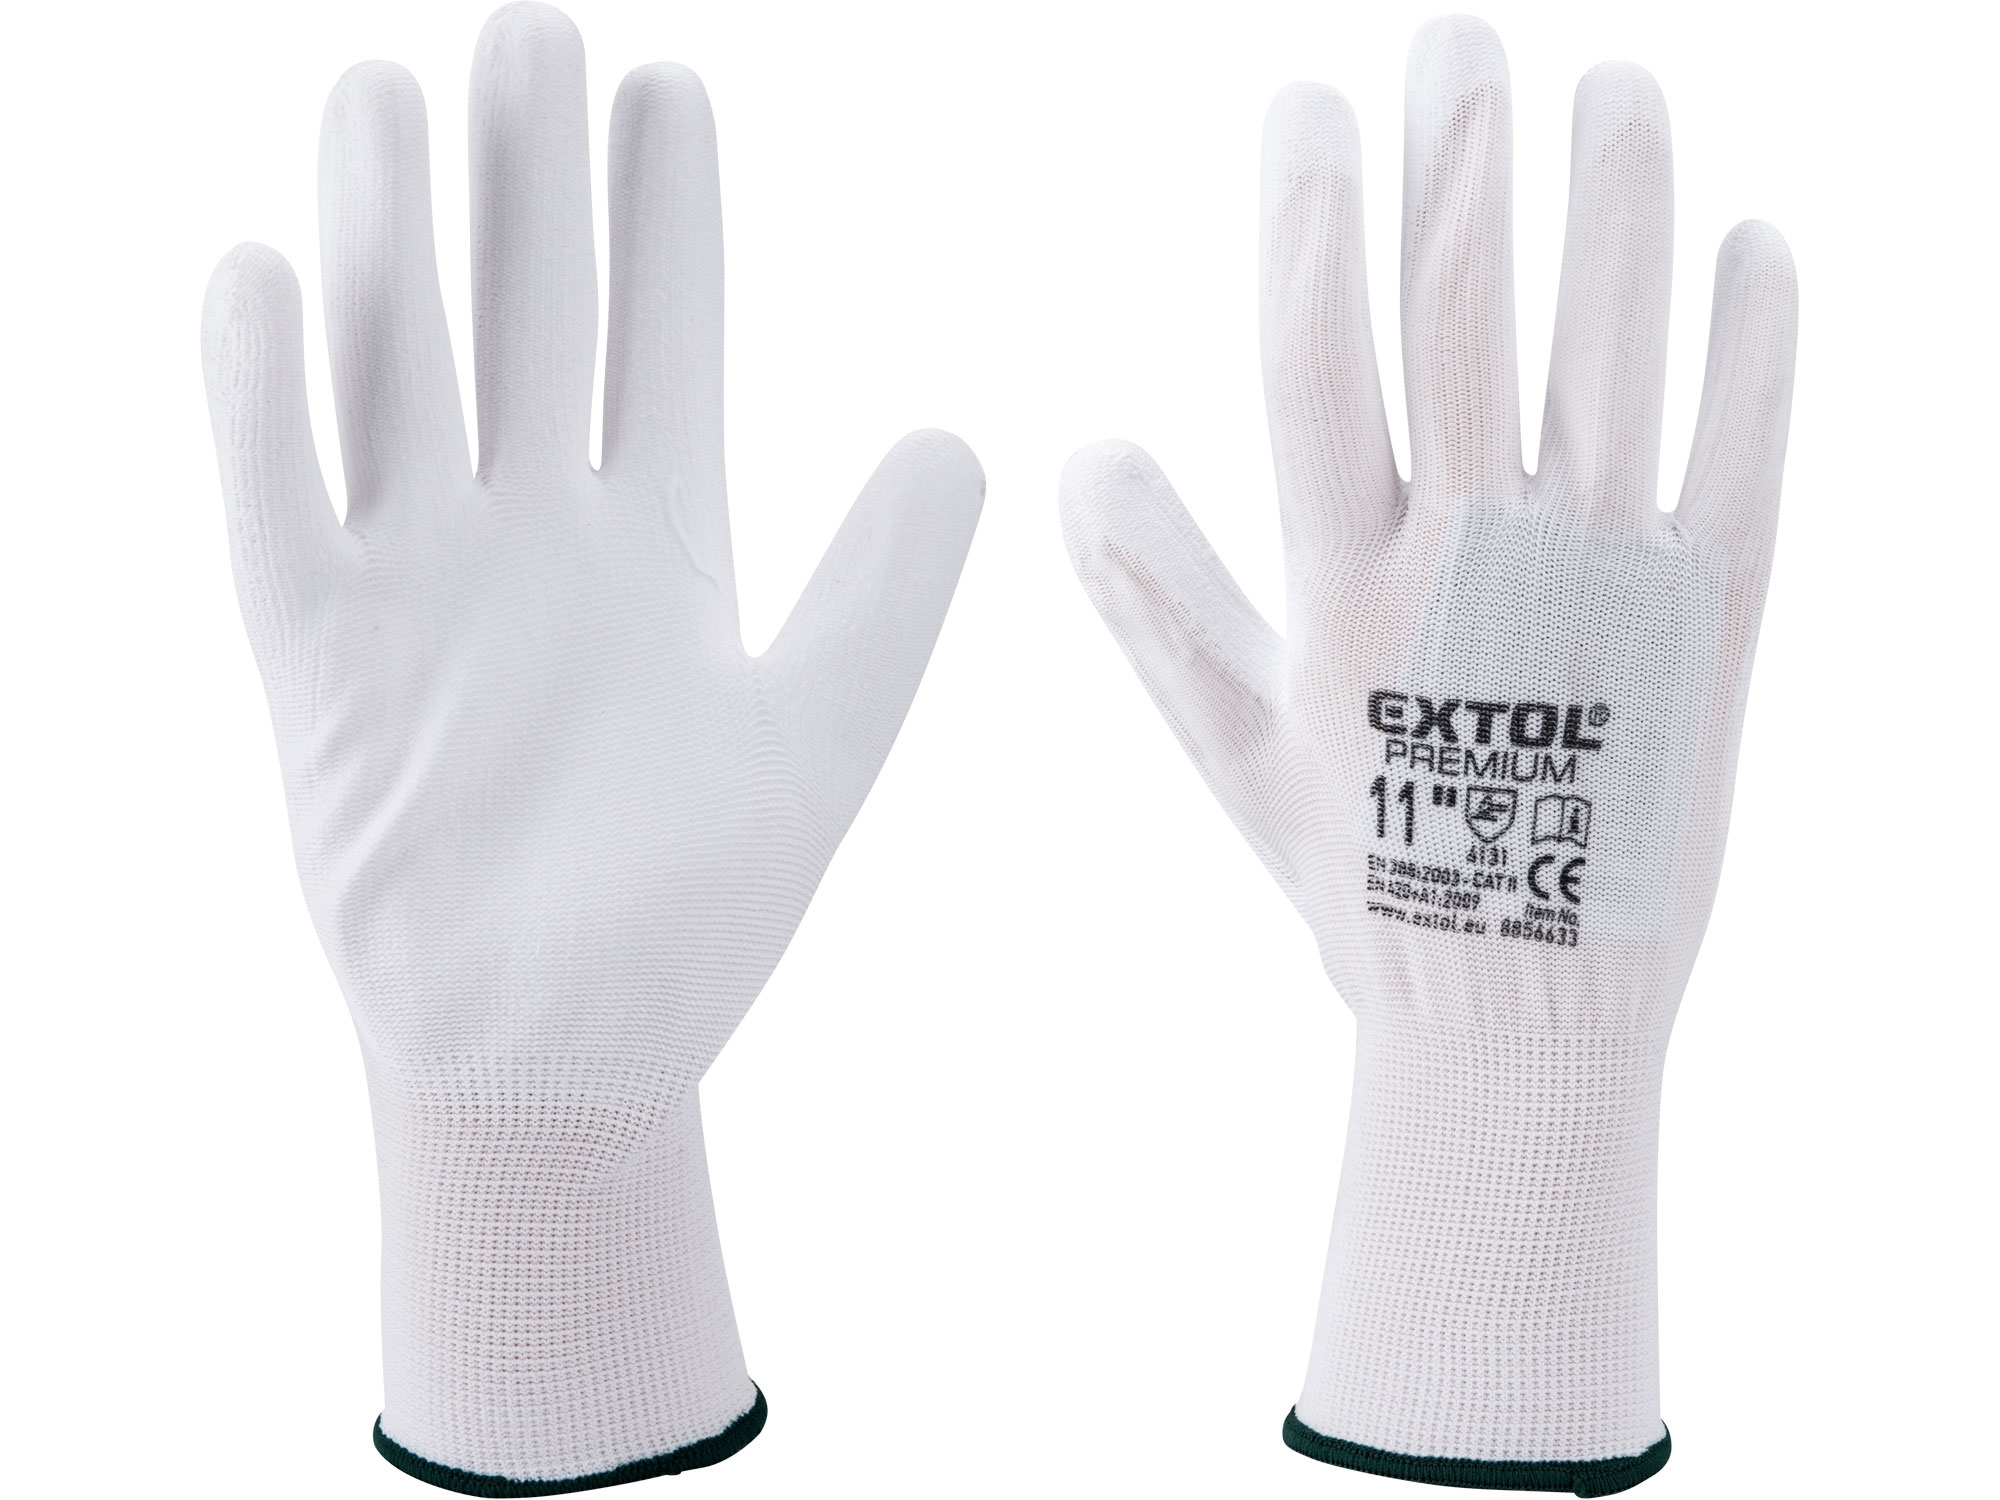 rukavice z polyesteru polomáčené v PU, bílé, velikost 8